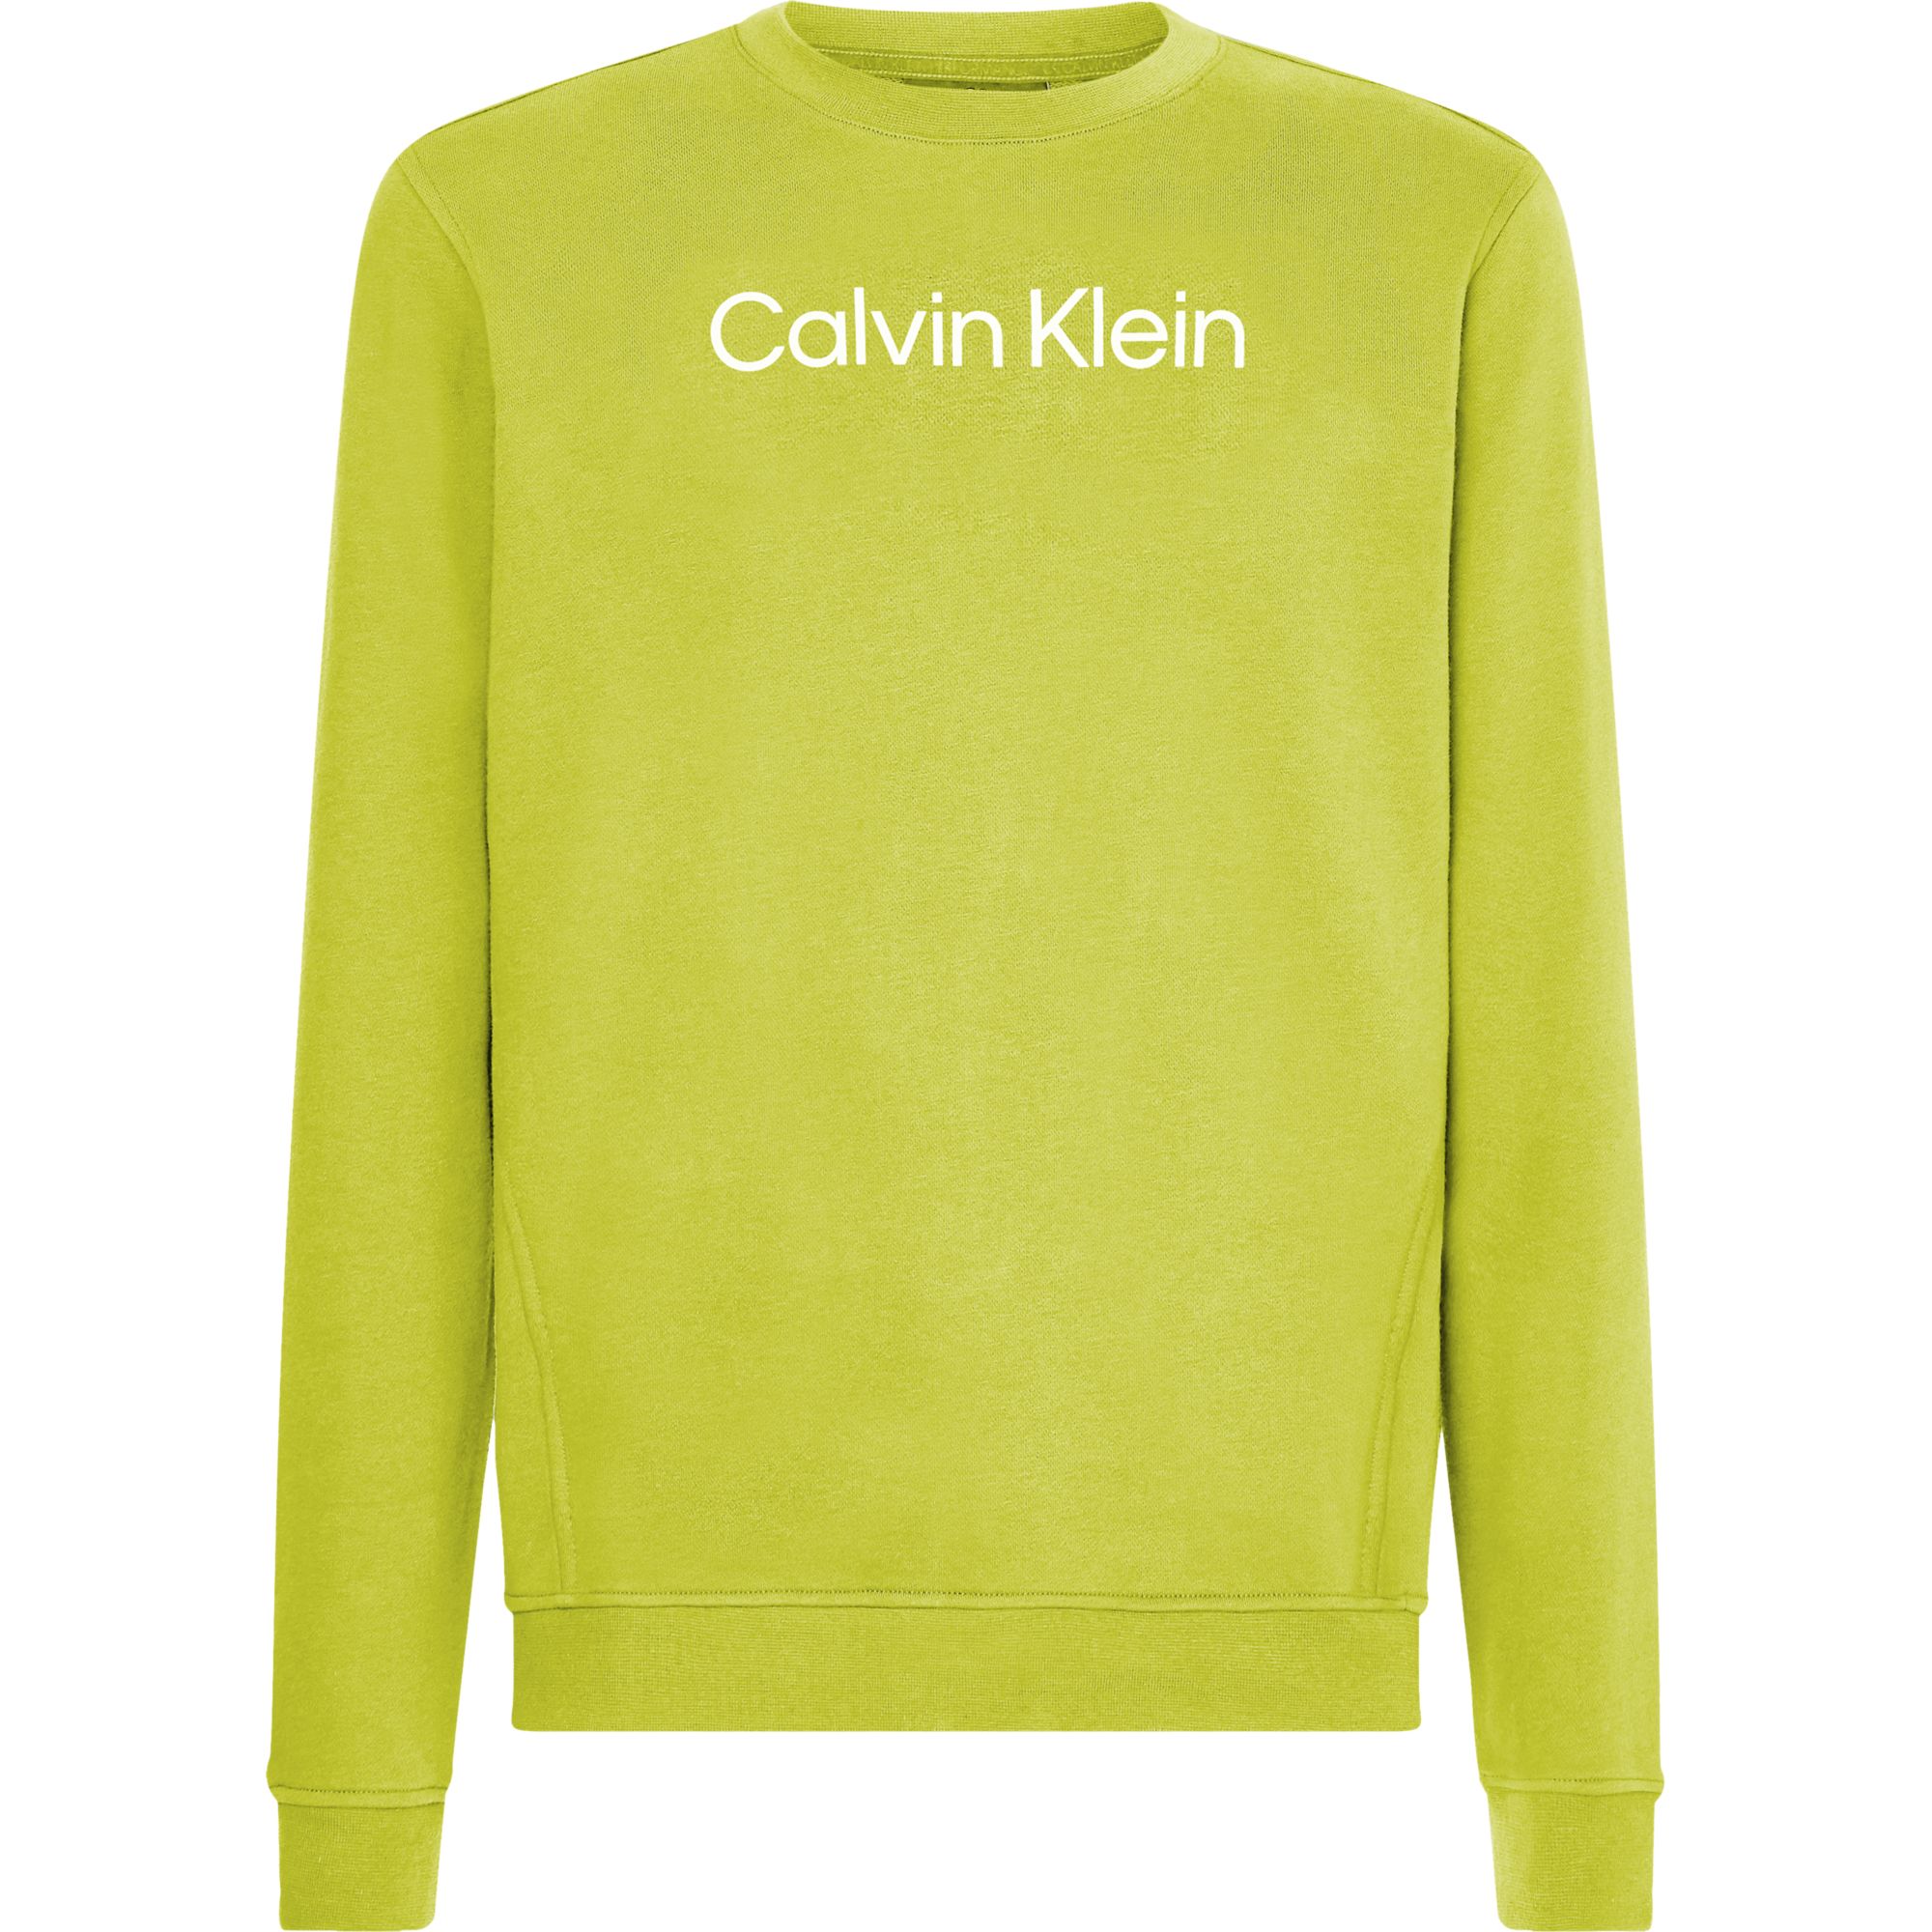 Pulover Calvin Klein imagine 2022